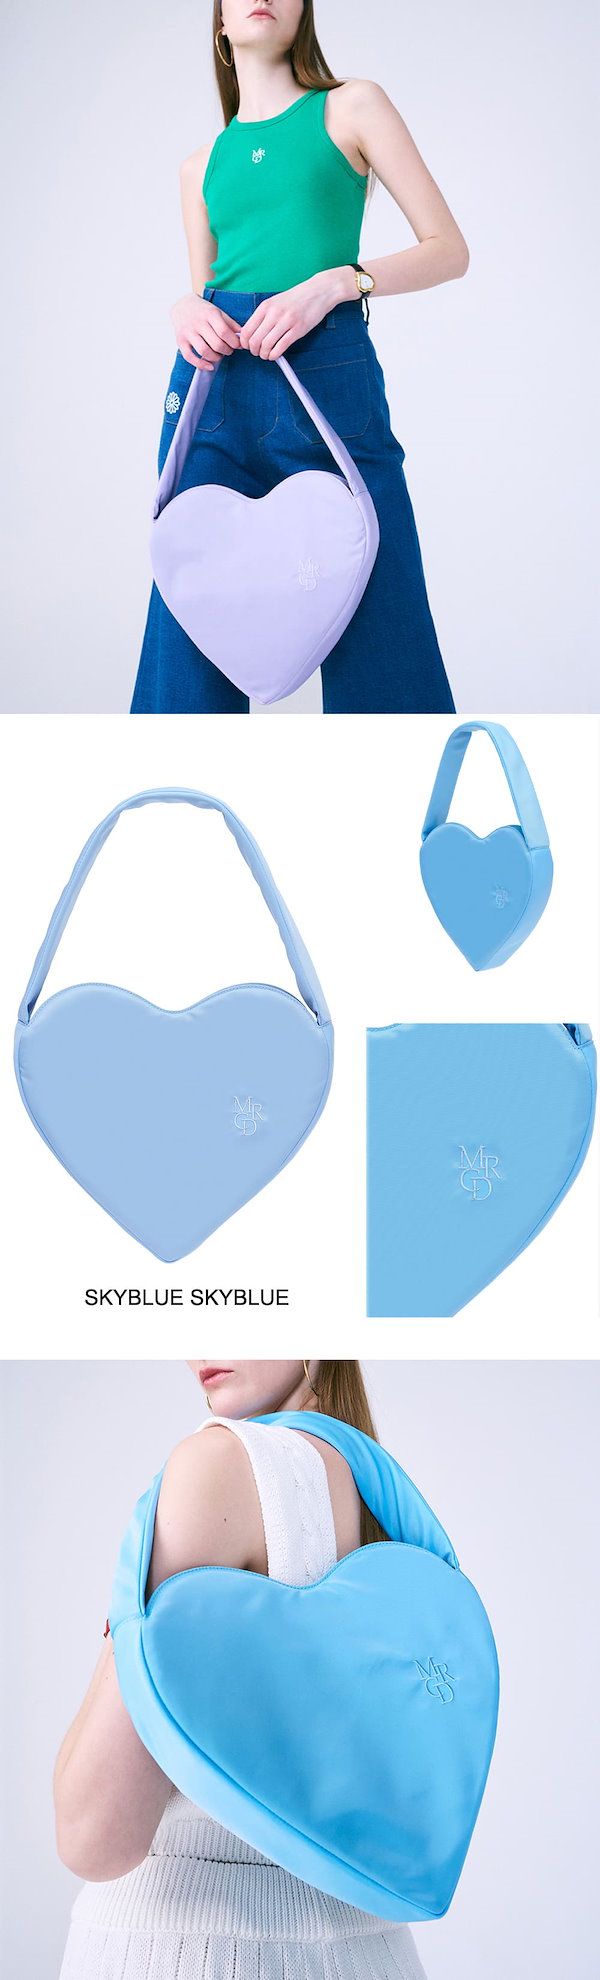 【無料配送】【Mardi Mercredi(マルディメクルディ)】 HEART MRCD BAG ハート バッグ 可愛らしくユニークなムード  【並行輸入品】